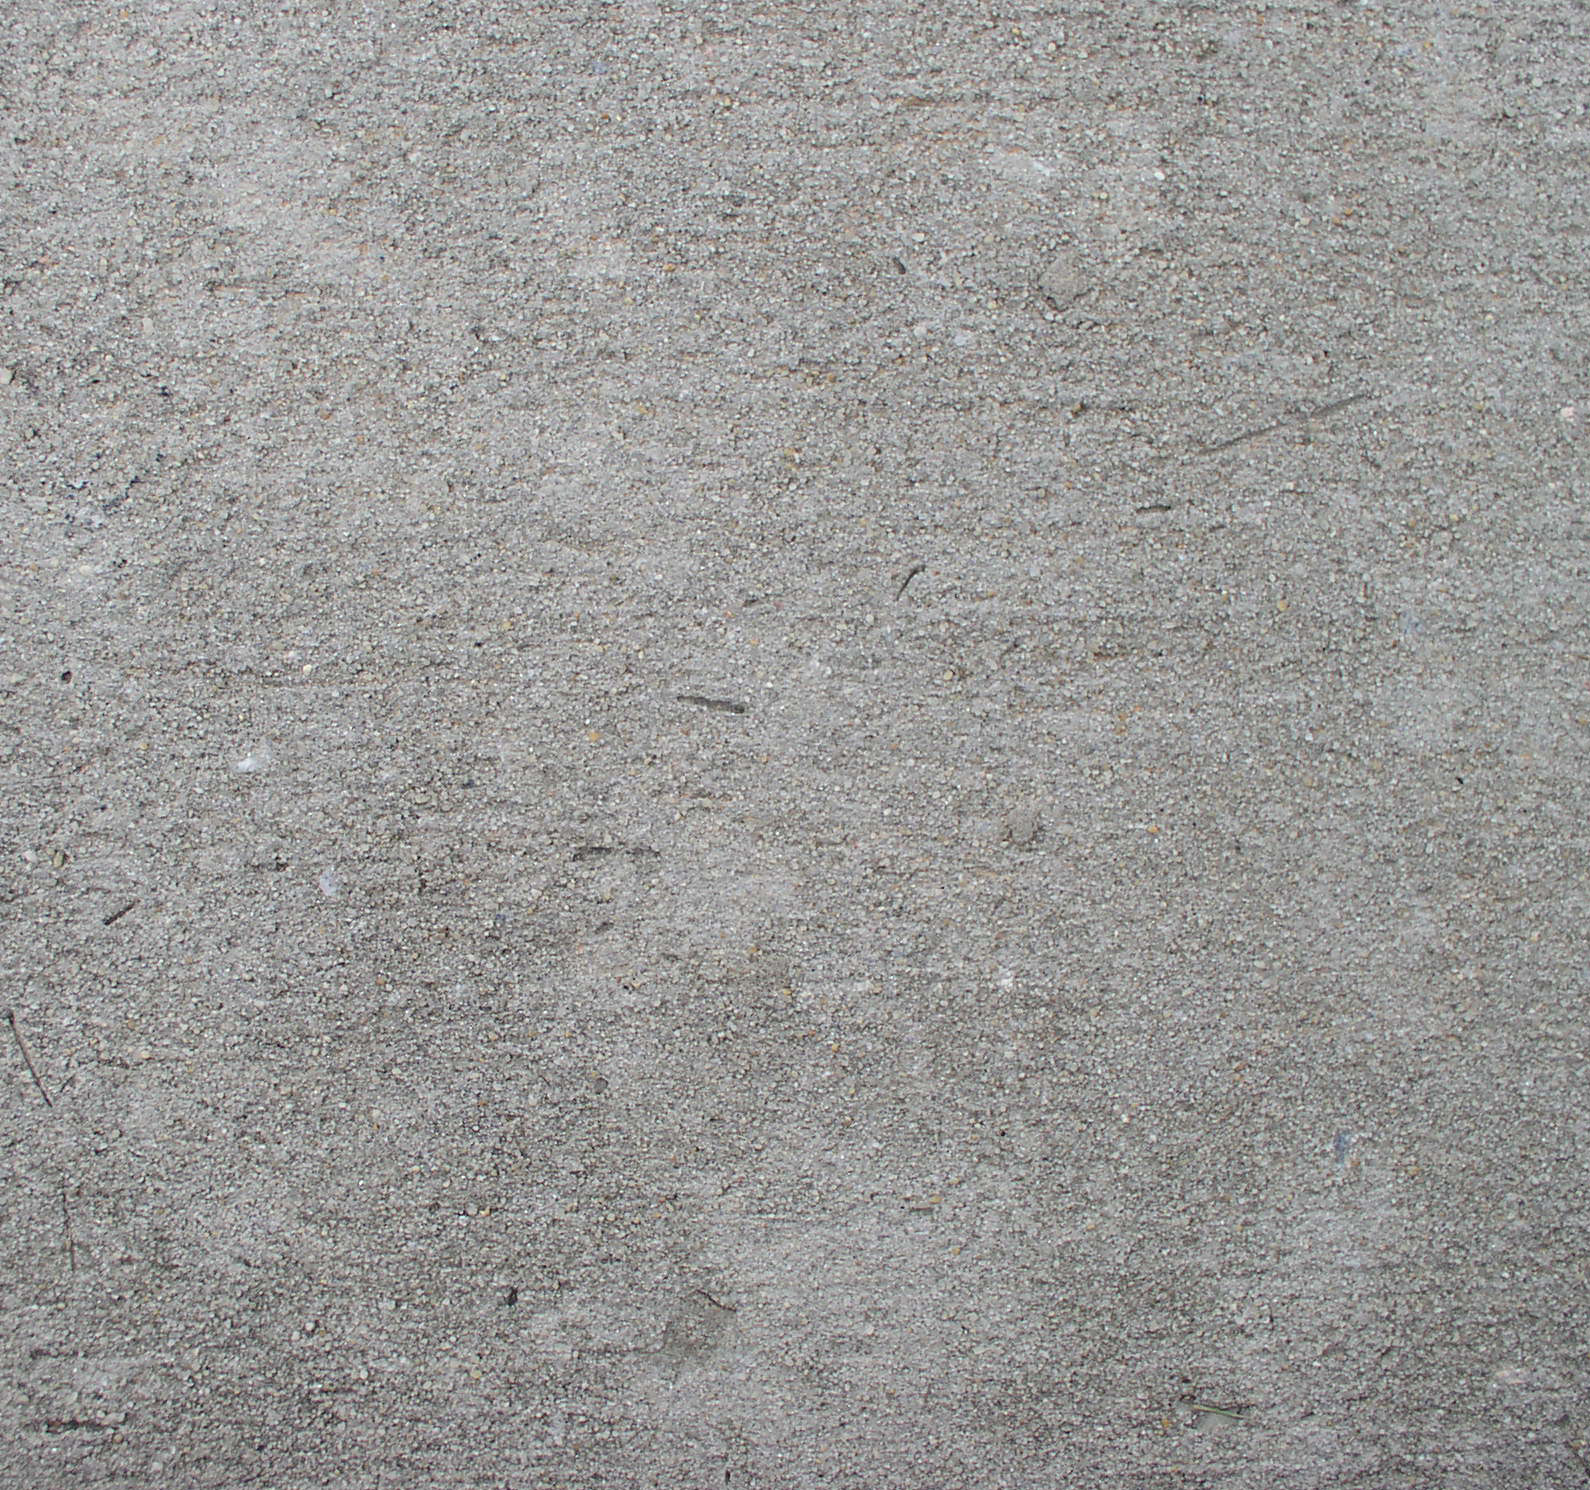 Concrete, Concrete texture, download photos, beton texture ...